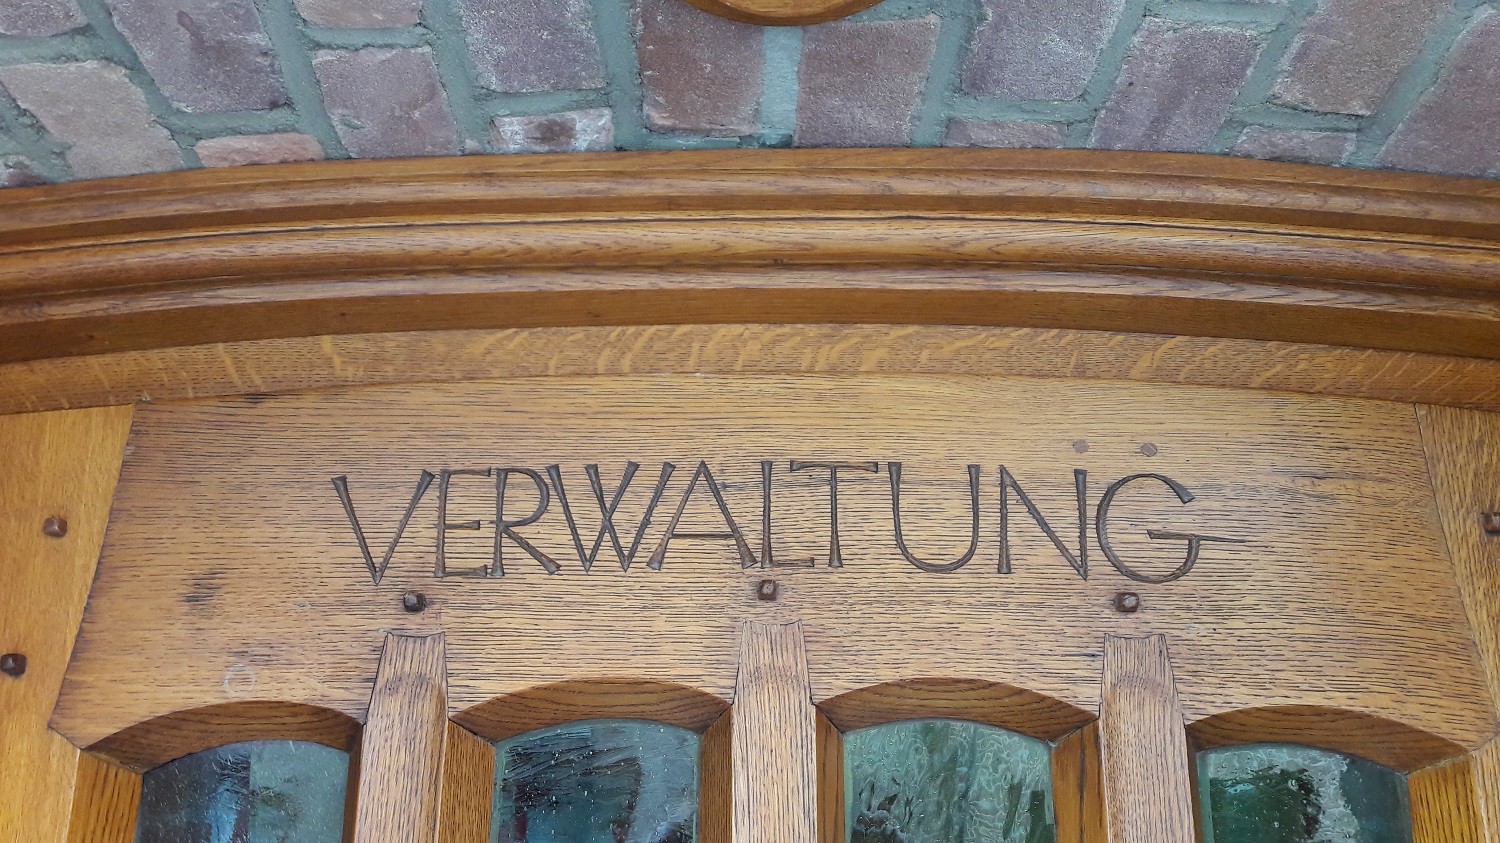 Das Bild zeigt den Schriftzug "Verwaltung" über der Tür des Nebeneingangs zum historischen Rathaus.